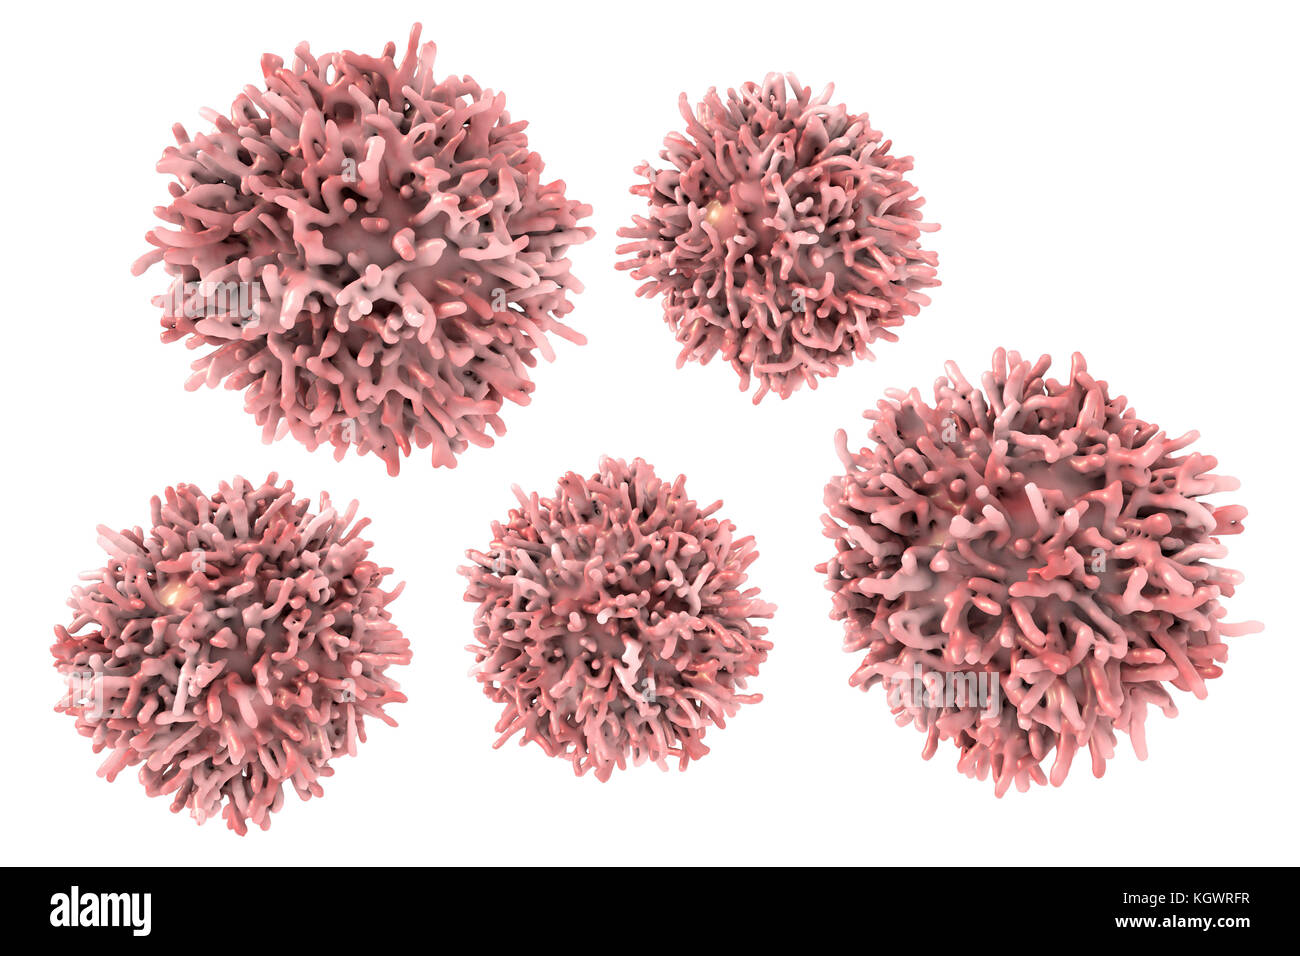 Les cellules de cancer de la thyroïde, l'illustration de l'ordinateur. Banque D'Images